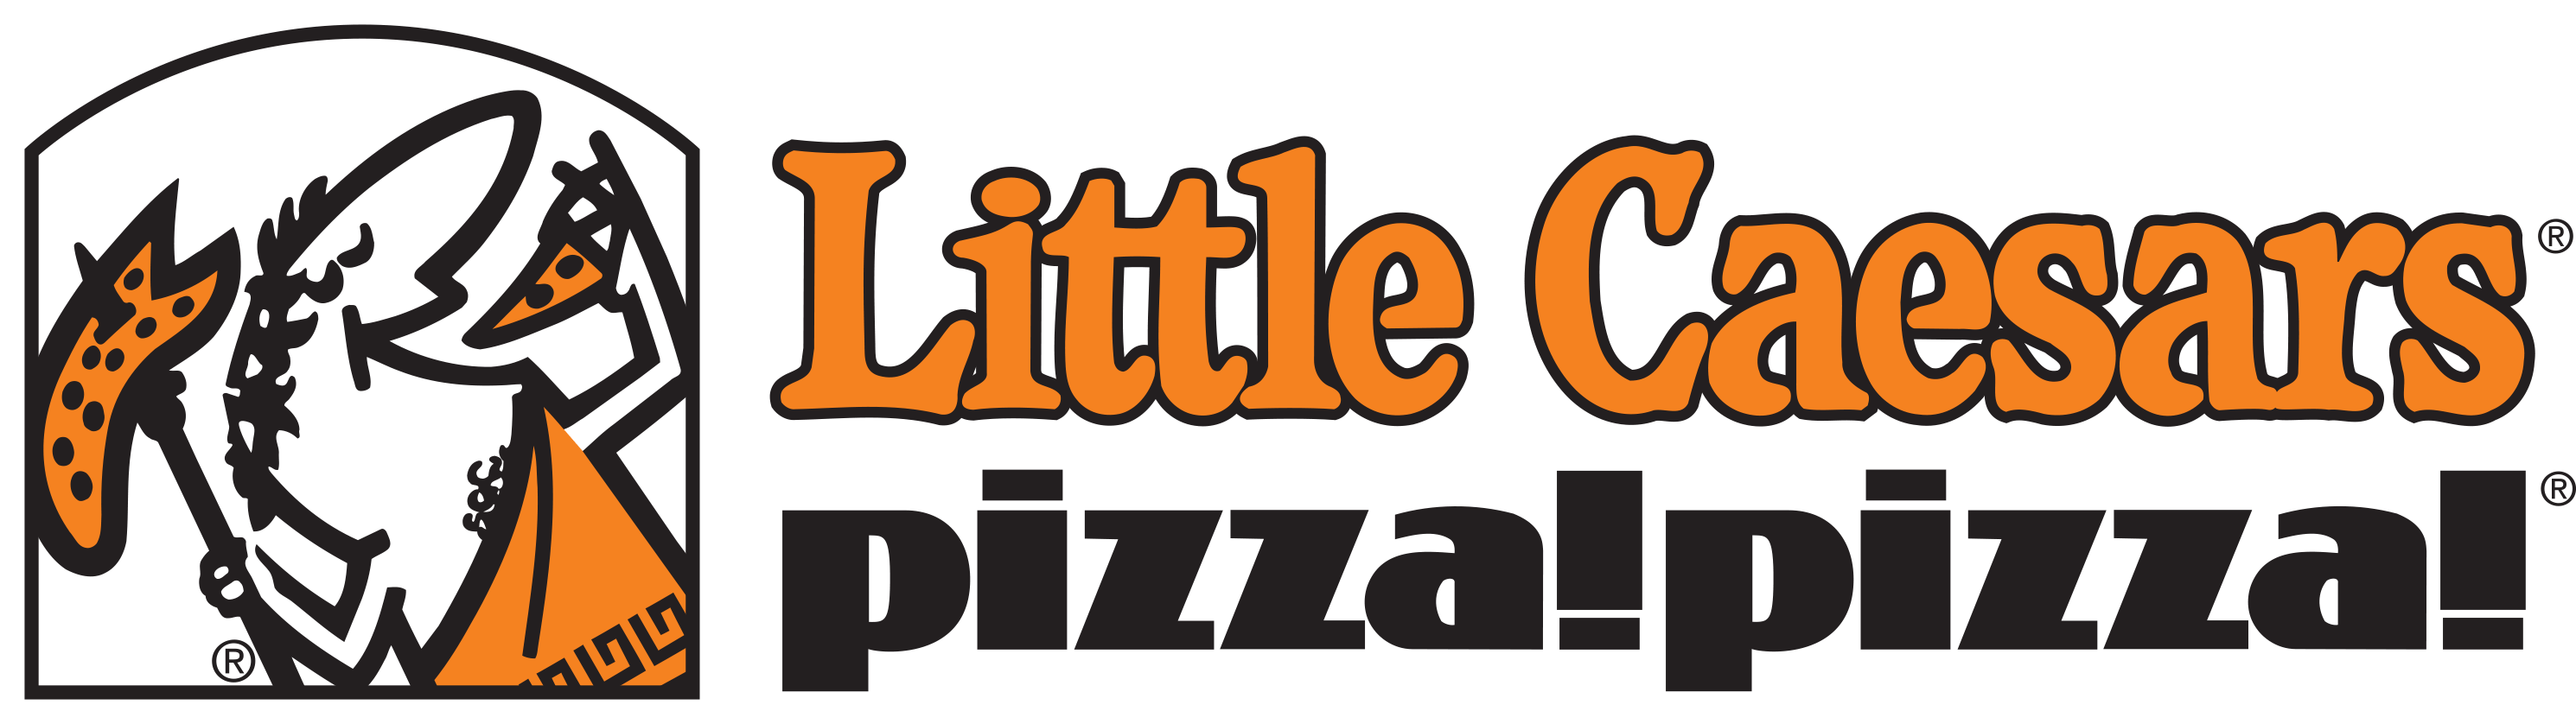 Little Cesars Logo - Little caesars pizza Logos